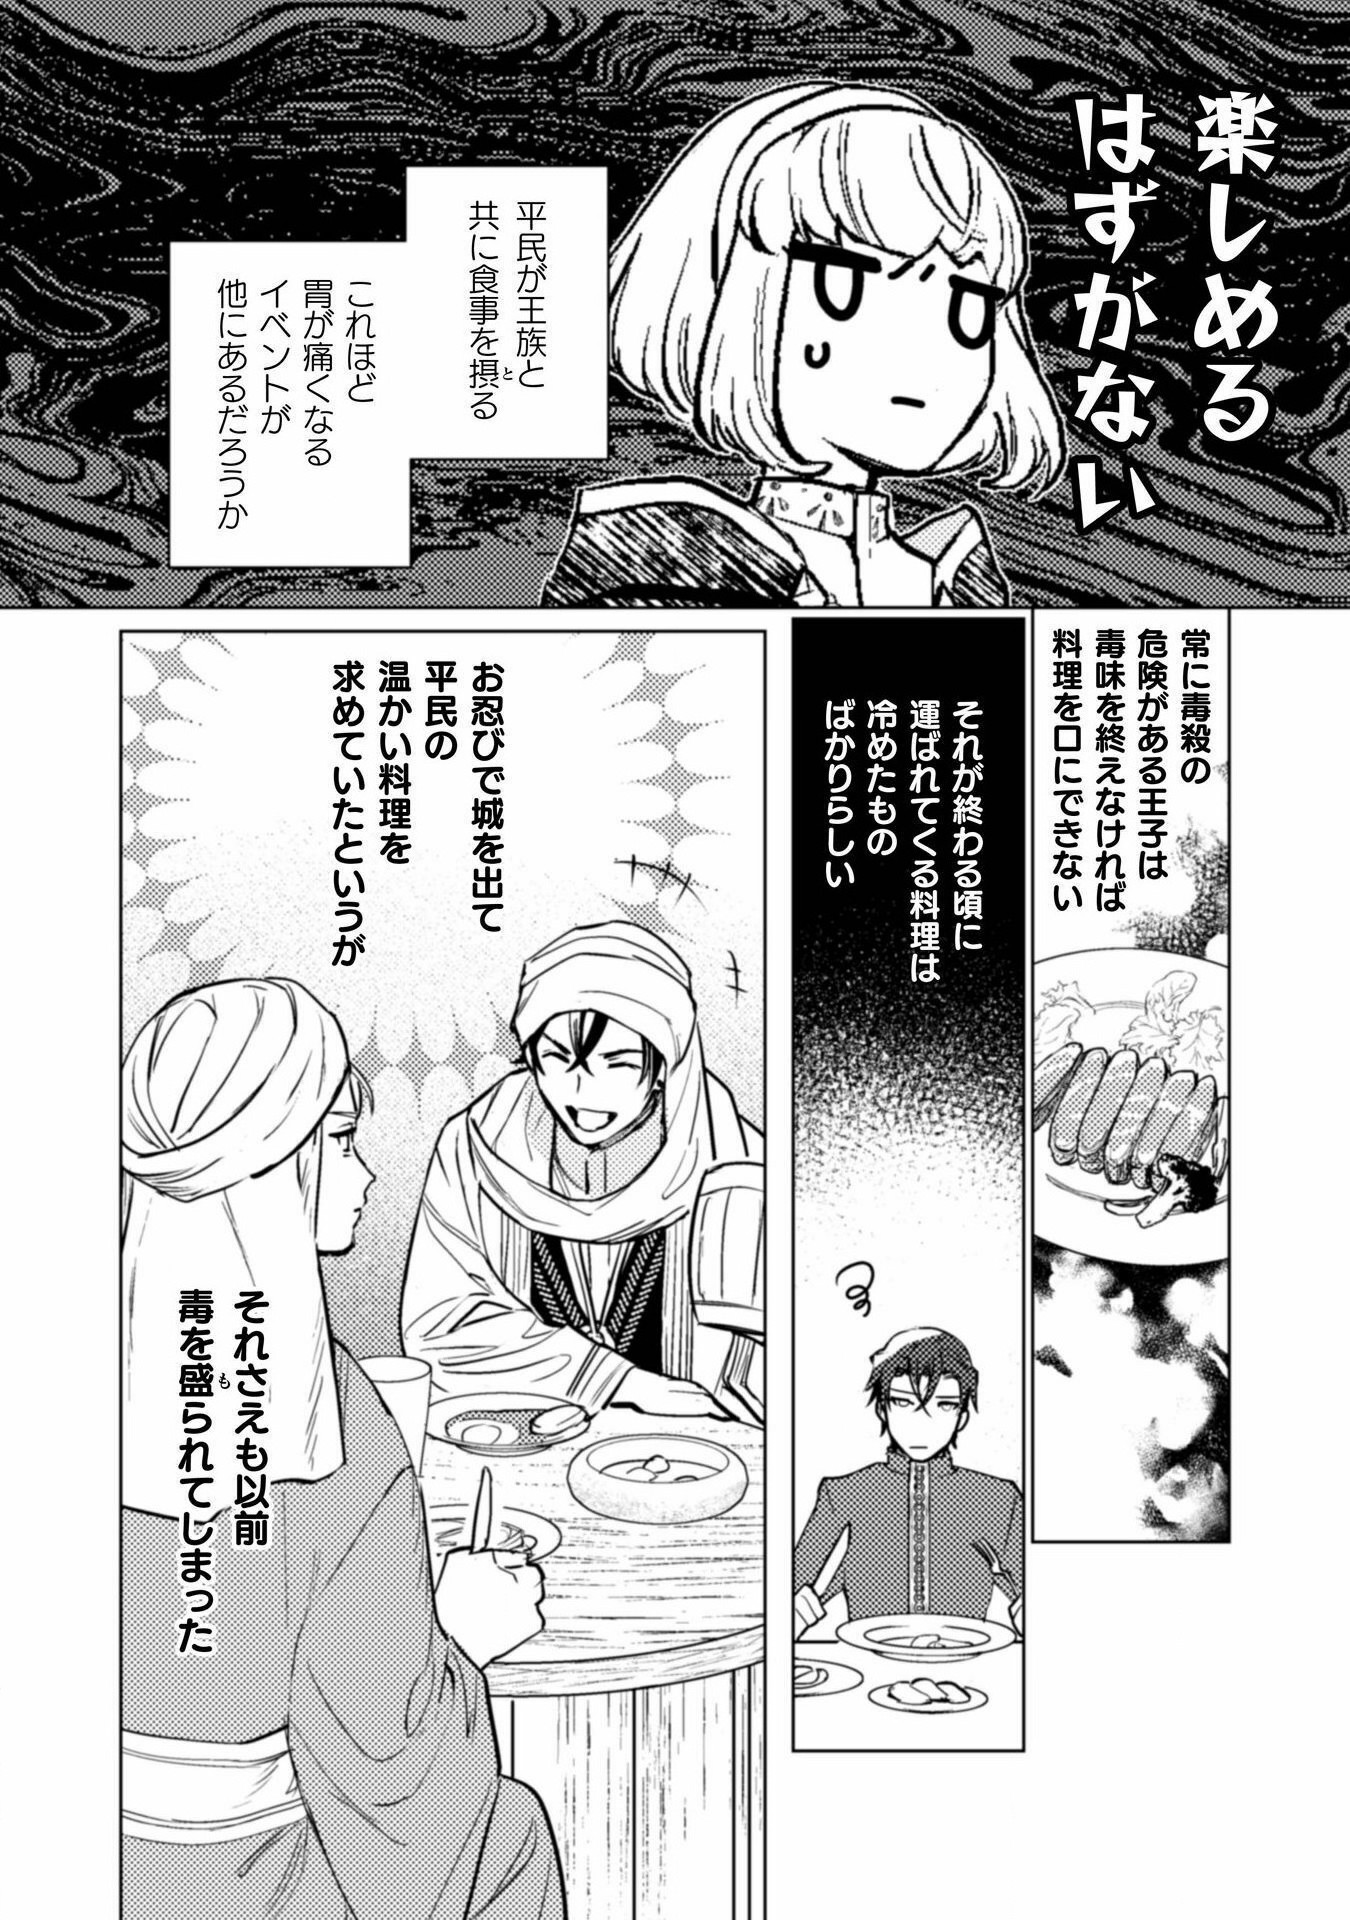 Uranaishi ni wa Hana Kishi no Koigokoro ga Mieteimasu - Chapter 21 - Page 2